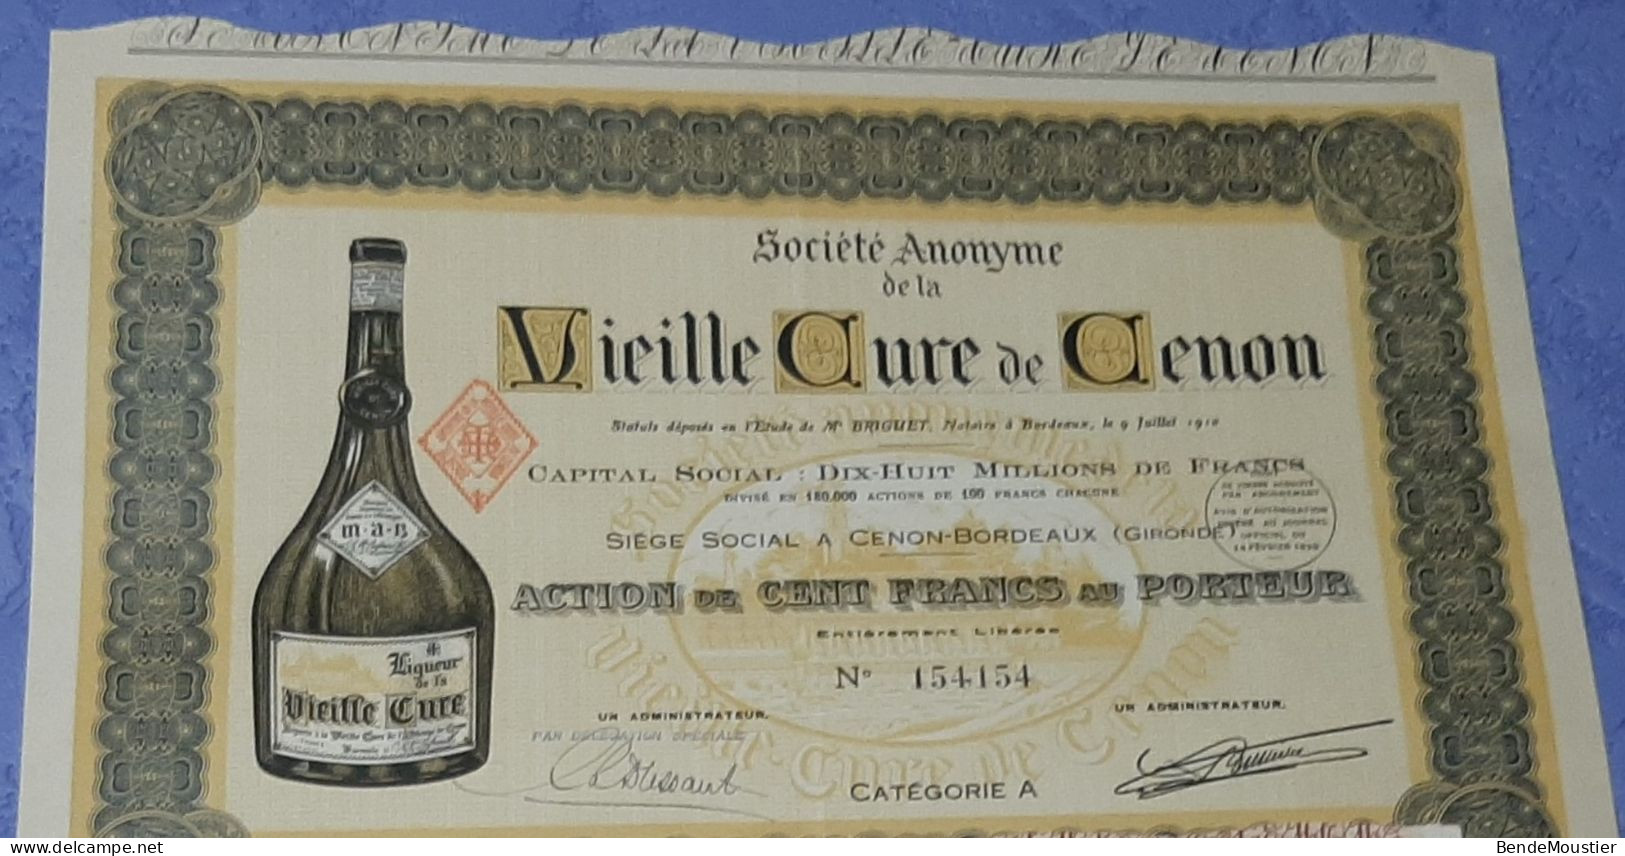 Vieille Cure De Cenon - Action De 2500 Frs - Action De 100 Frs Au Porteur - Cenon-Bordeaux - Gironde 1910 & 1952. - Agriculture